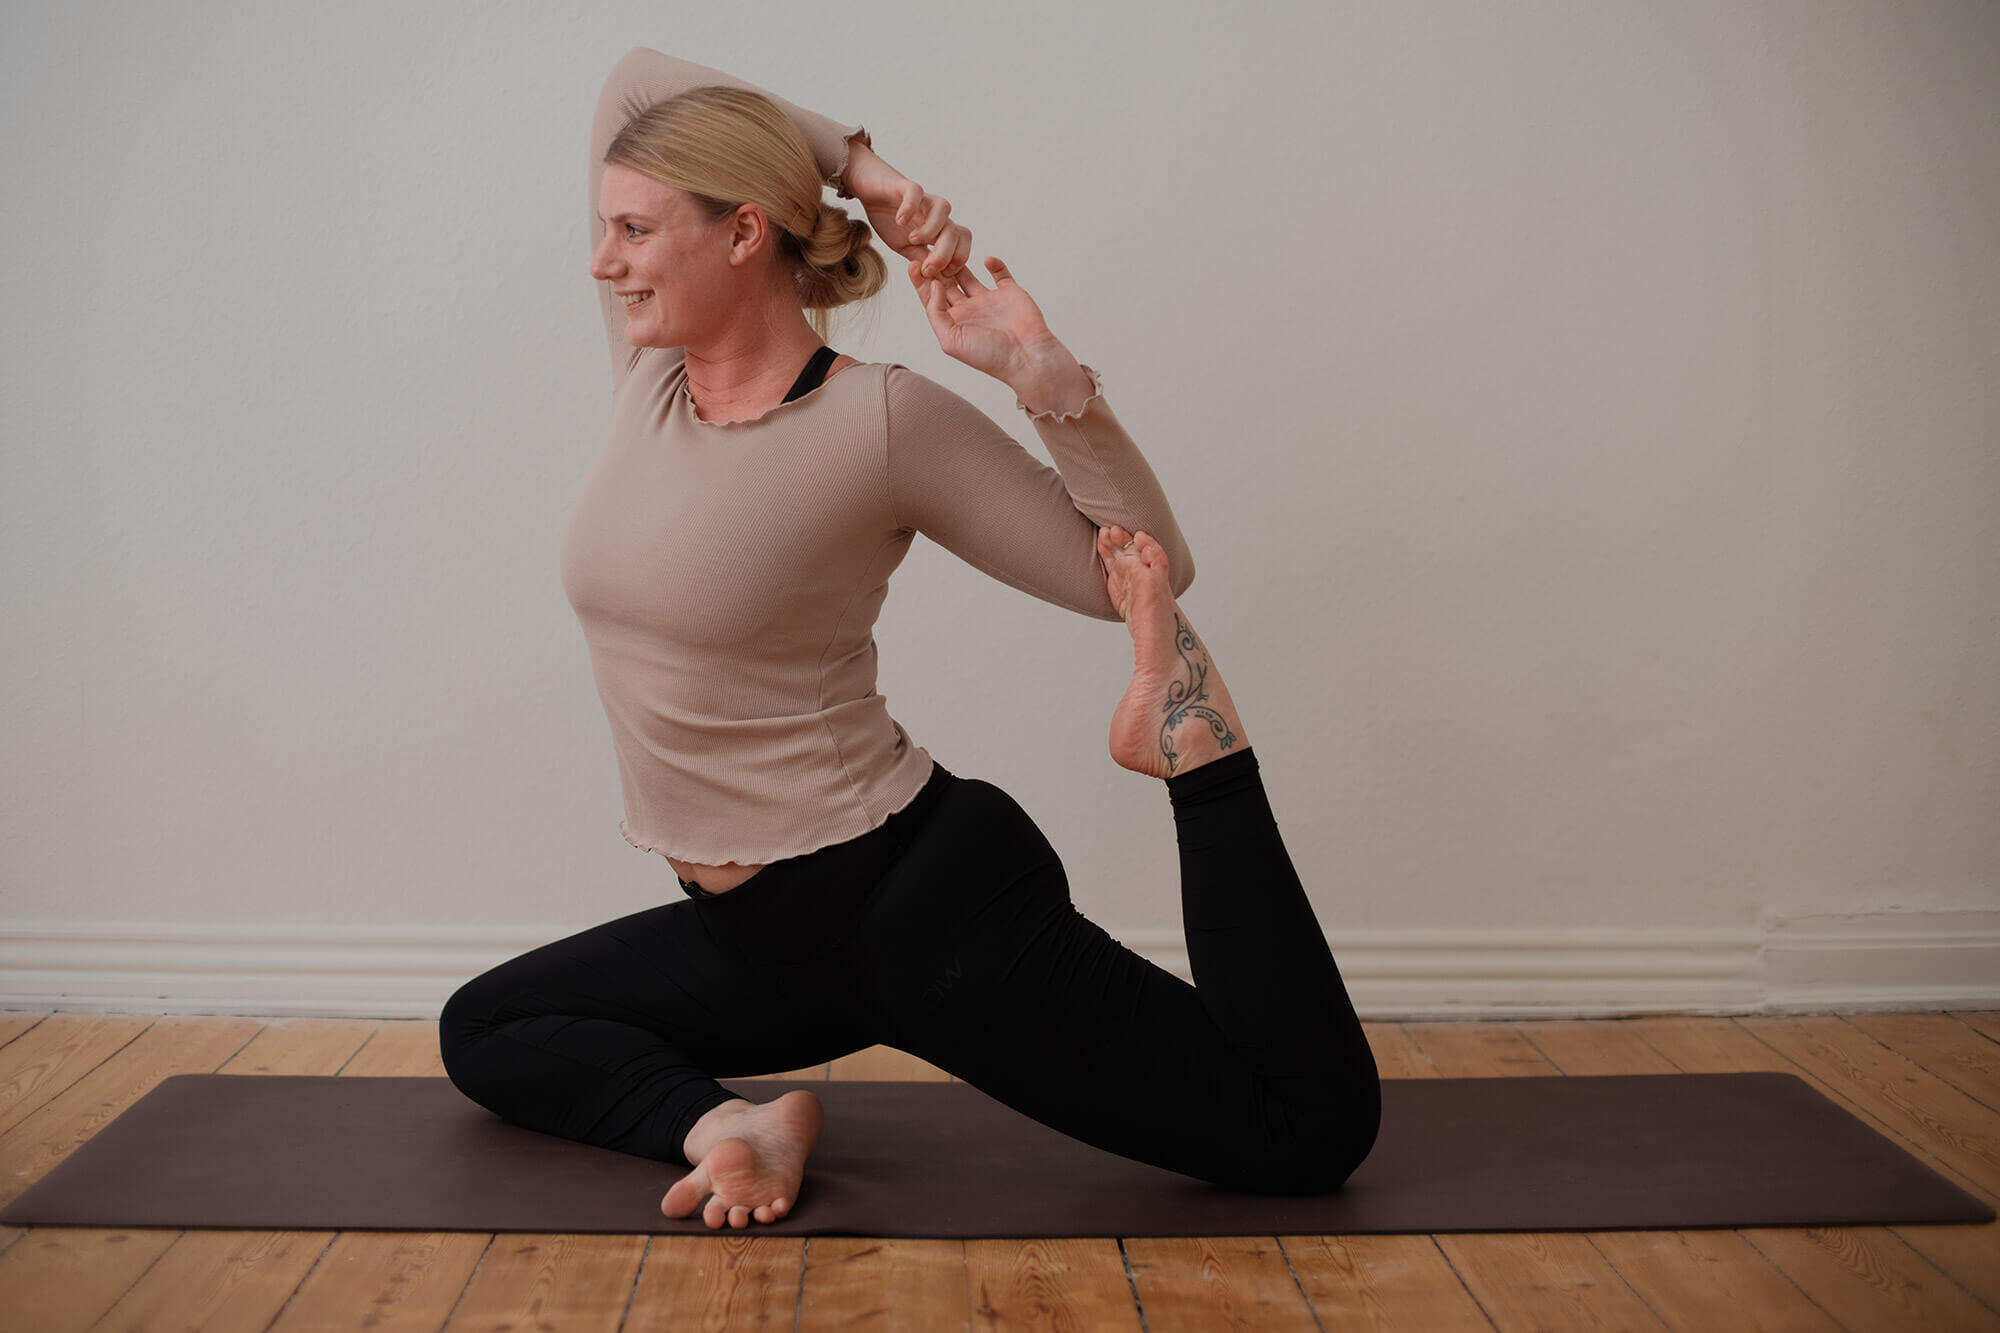 Instruktøren Cecilie der dyrker yoga i sit yoga studio i Odense